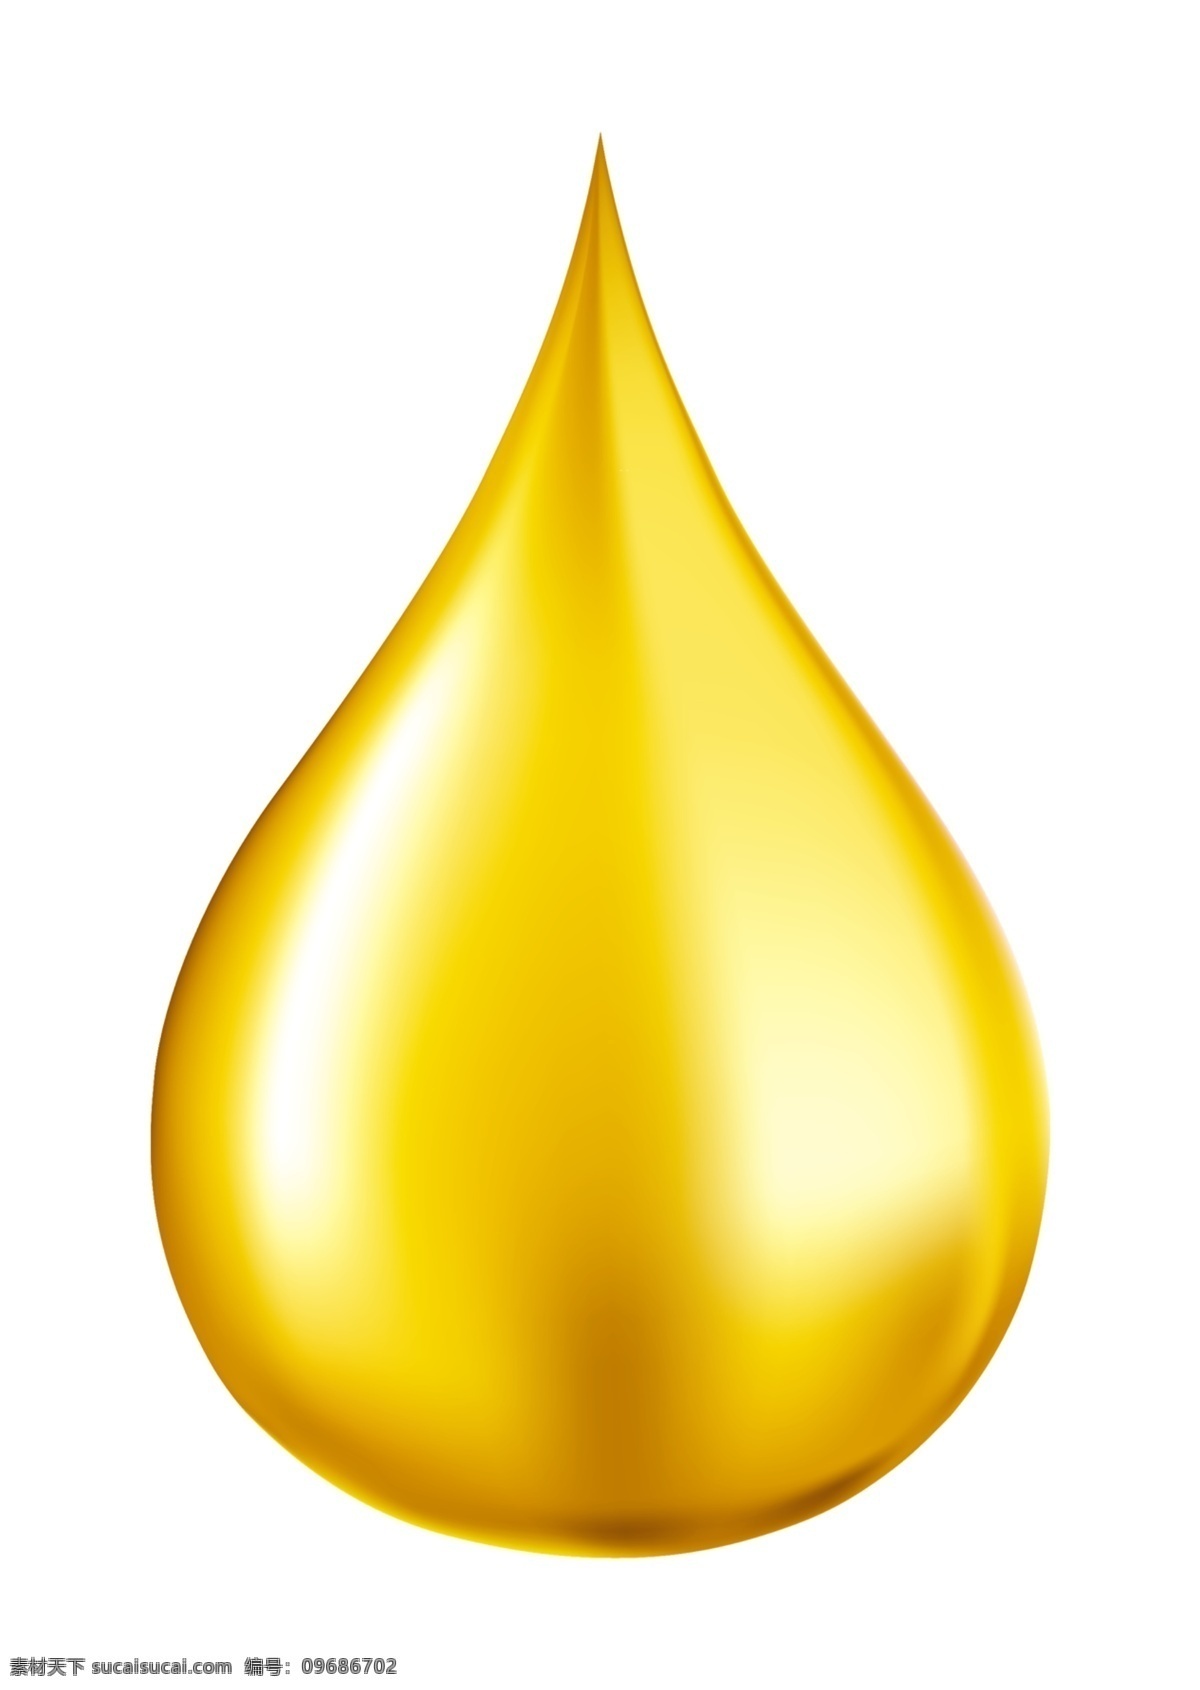 油滴 油图 润滑油 油 油效果 石油化工类图 分层